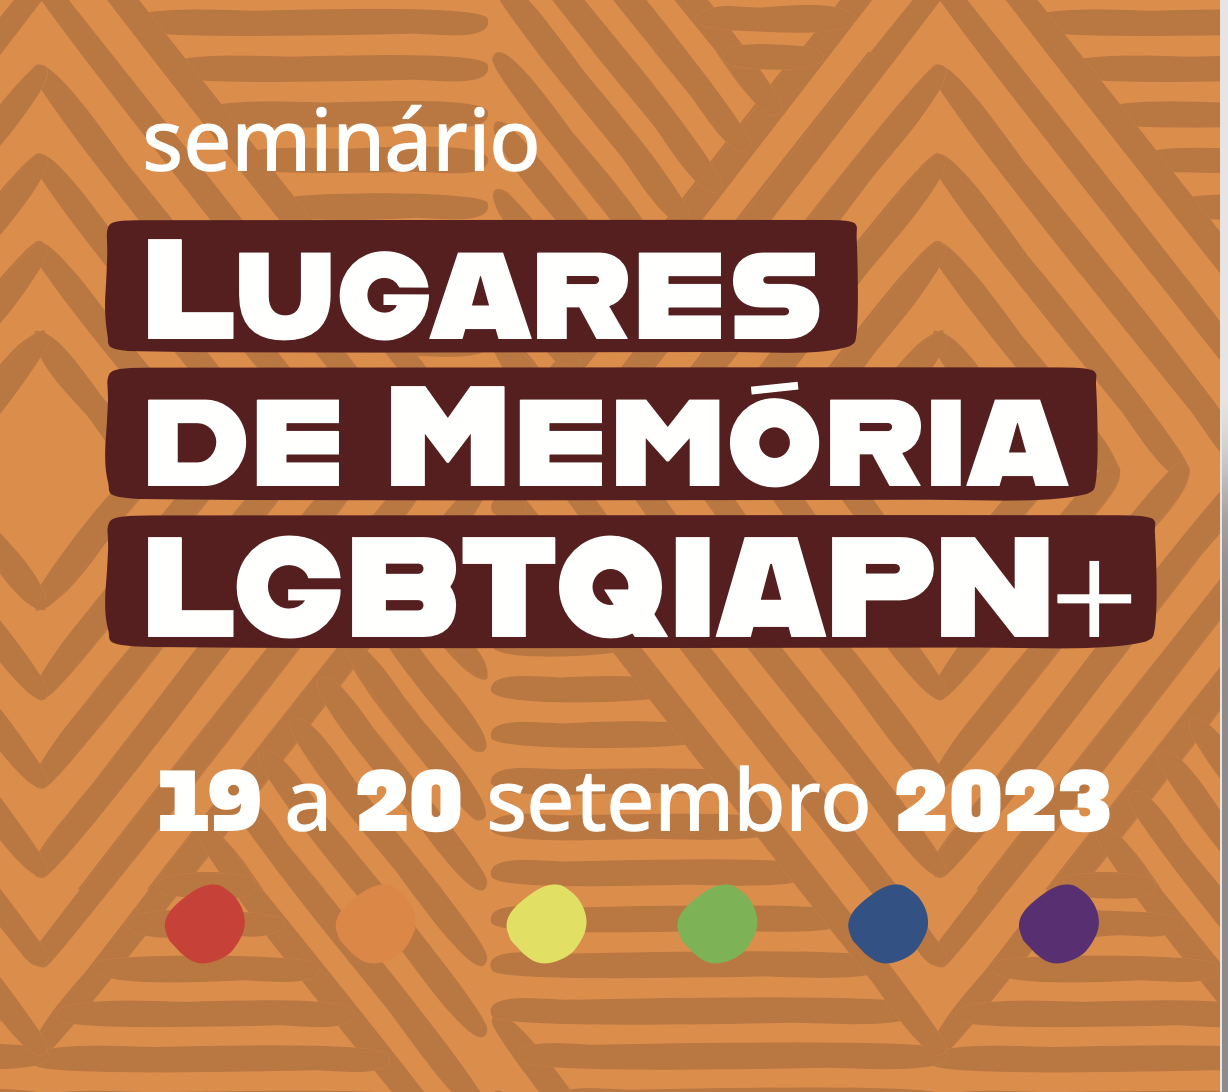 Seminário Lugares de Memória LGBTQIAPN+